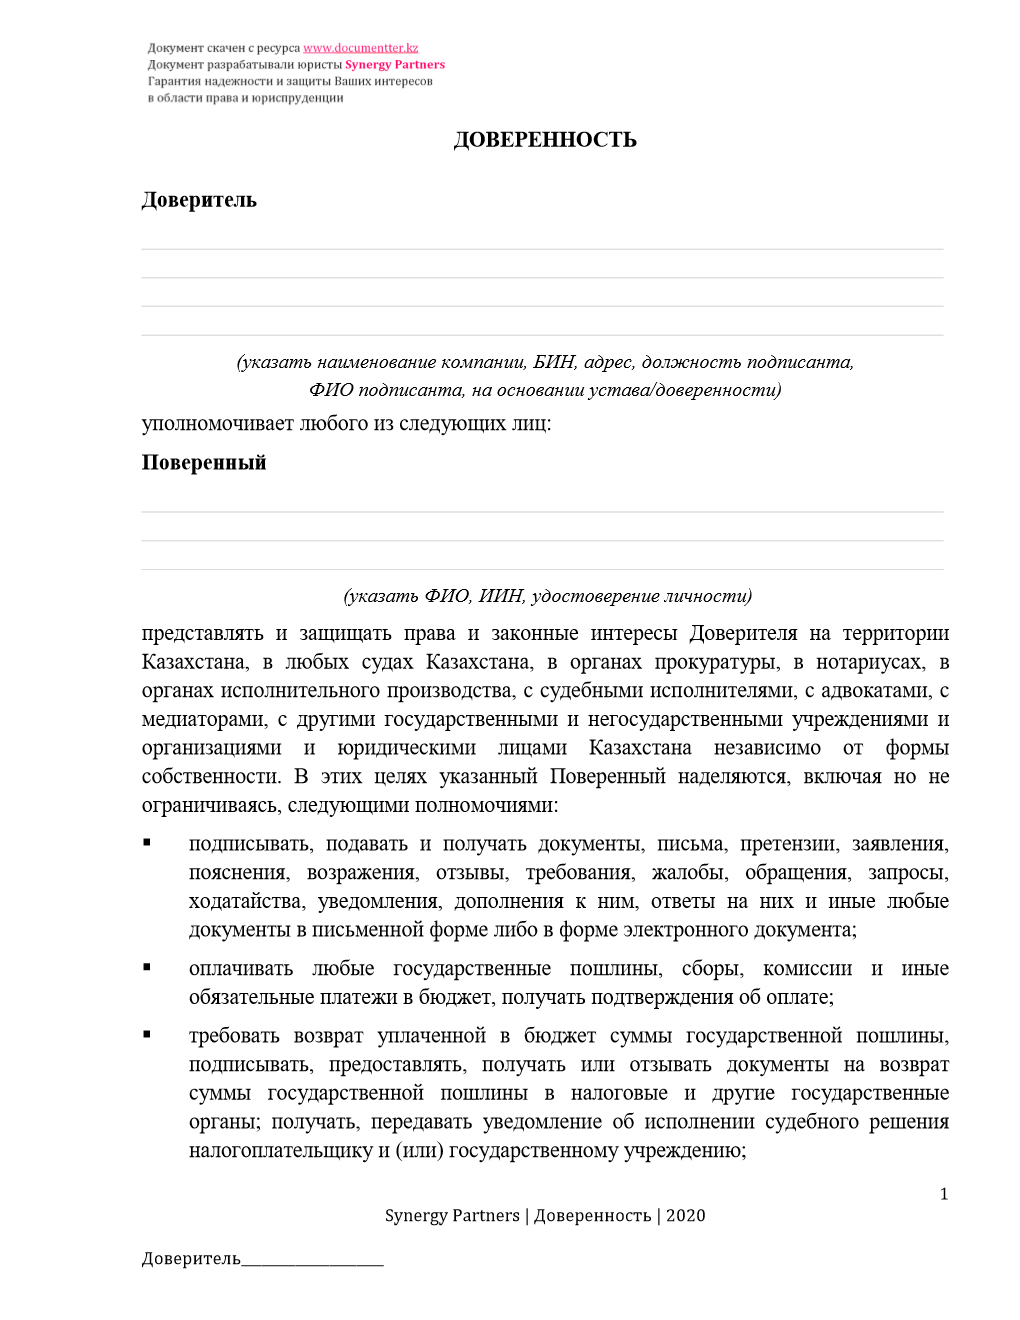 Доверенность только для исполнительного производства | documentterkz.com в Казахстане